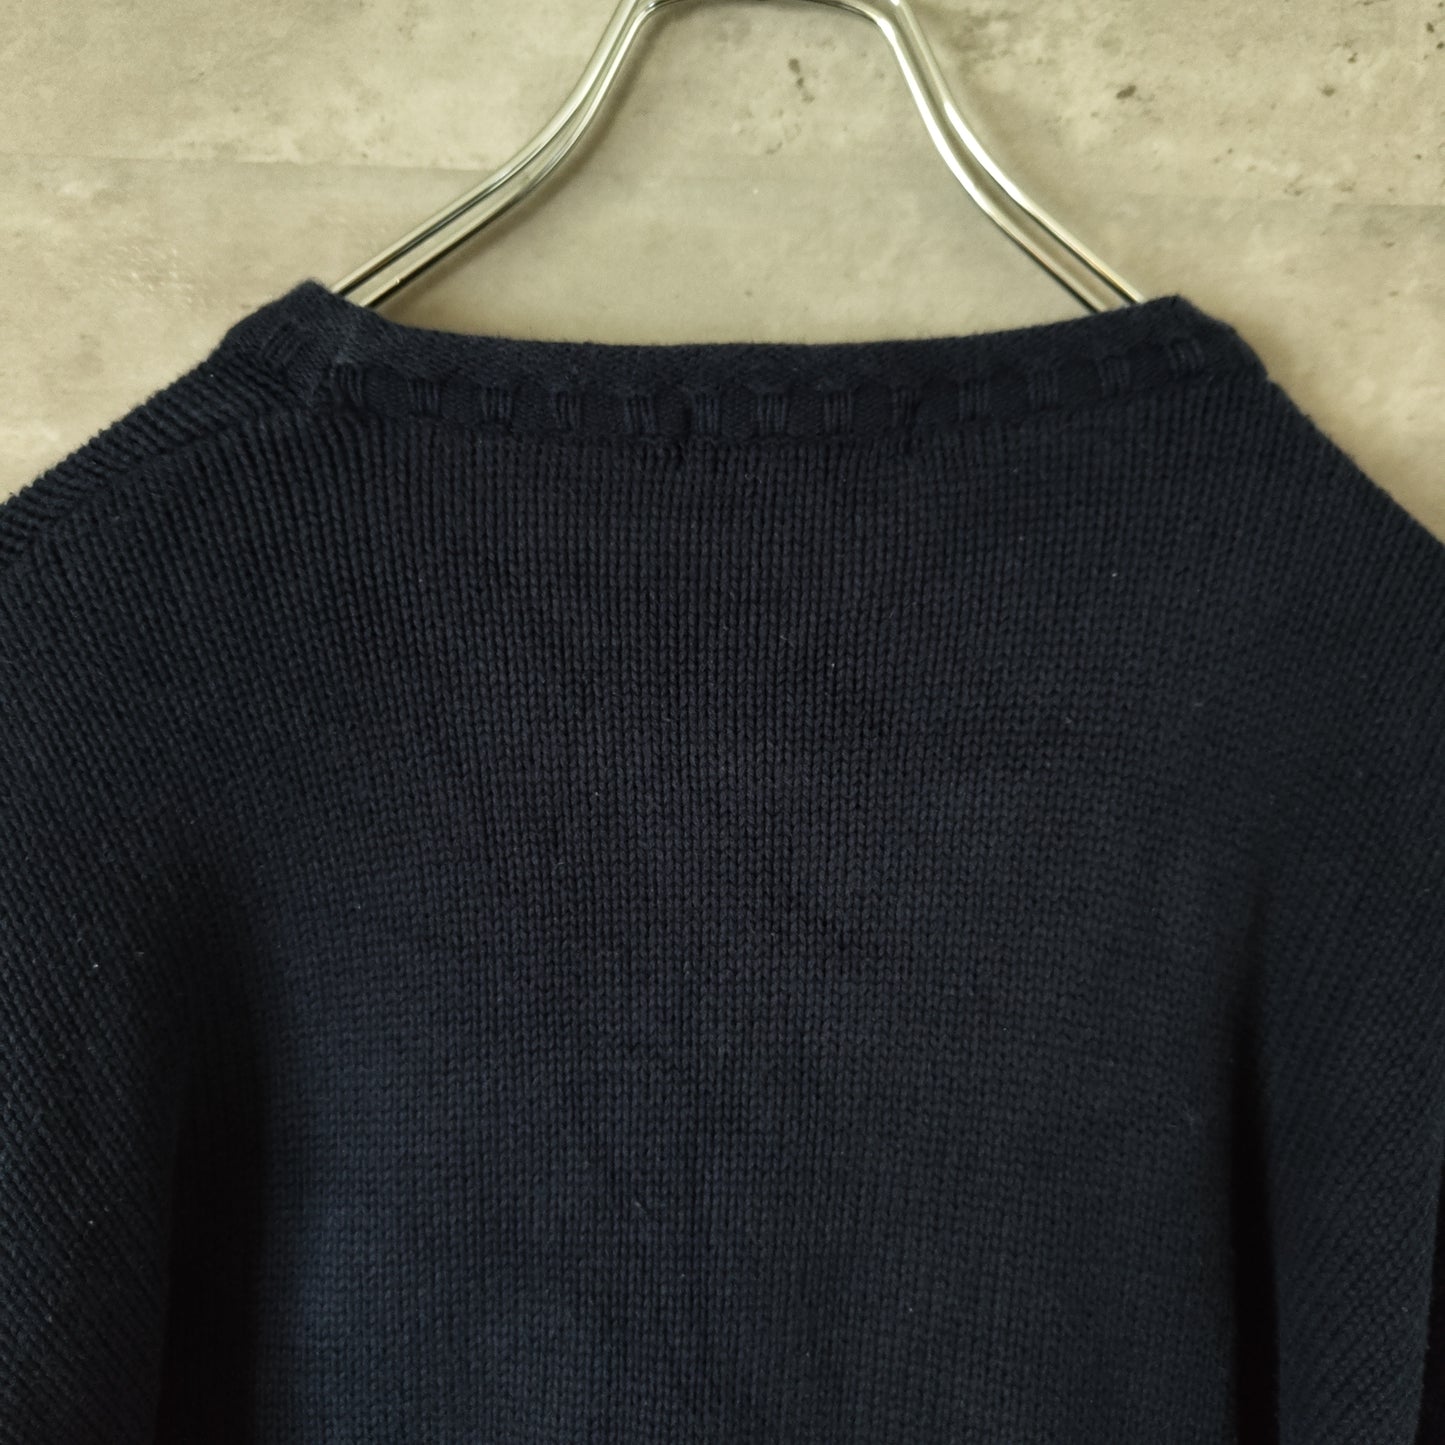 [NAUTICA] middle gauge cotton sweater